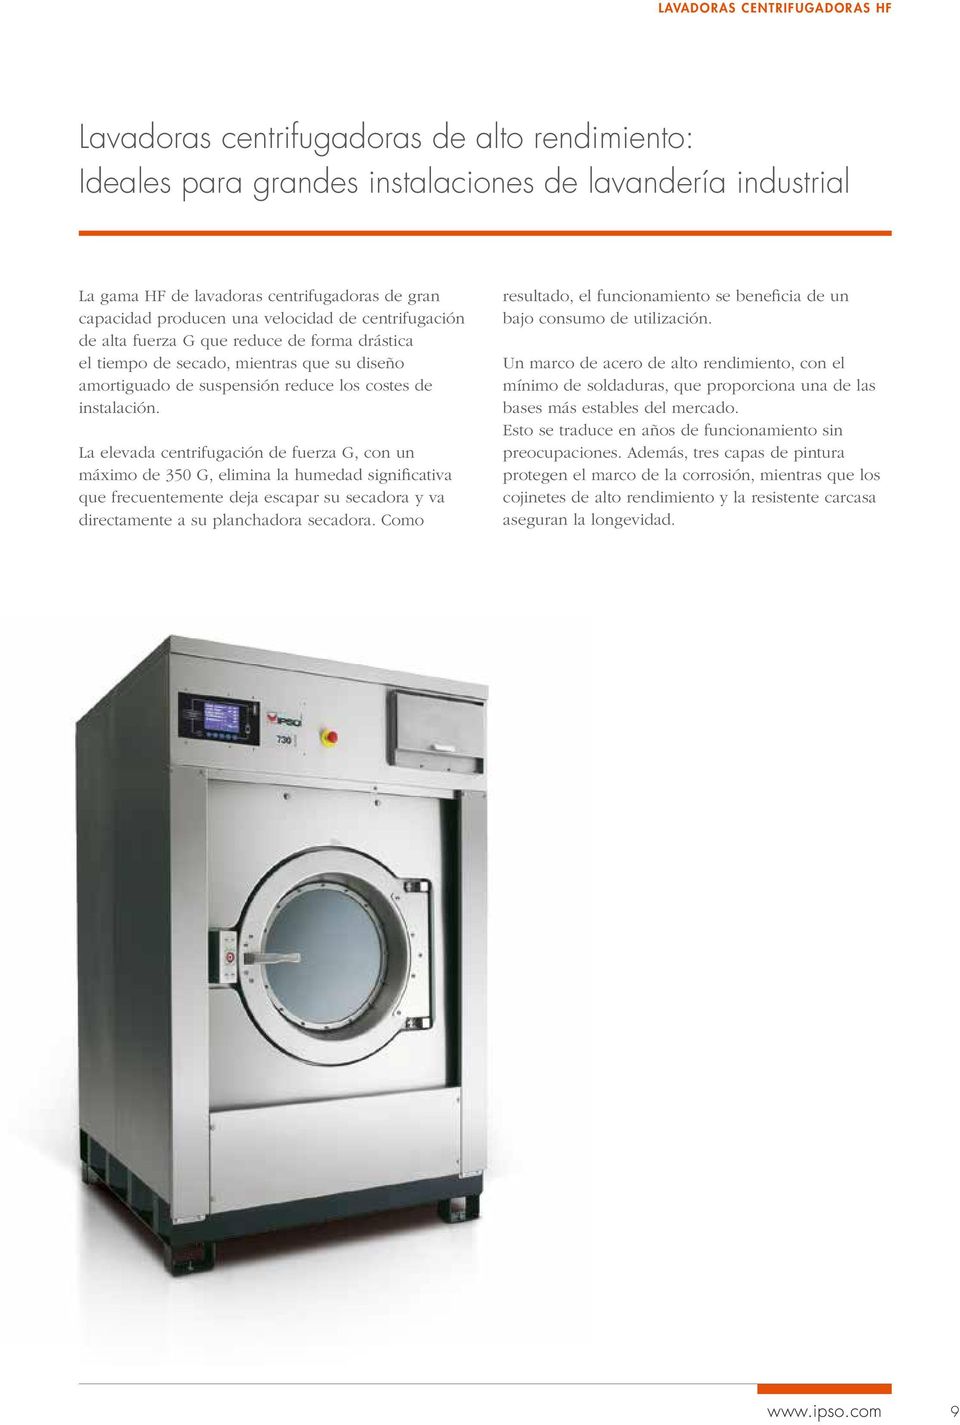 La elevada centrifugación de fuerza G, con un máximo de 350 G, elimina la humedad significativa que frecuentemente deja escapar su secadora y va directamente a su planchadora secadora.